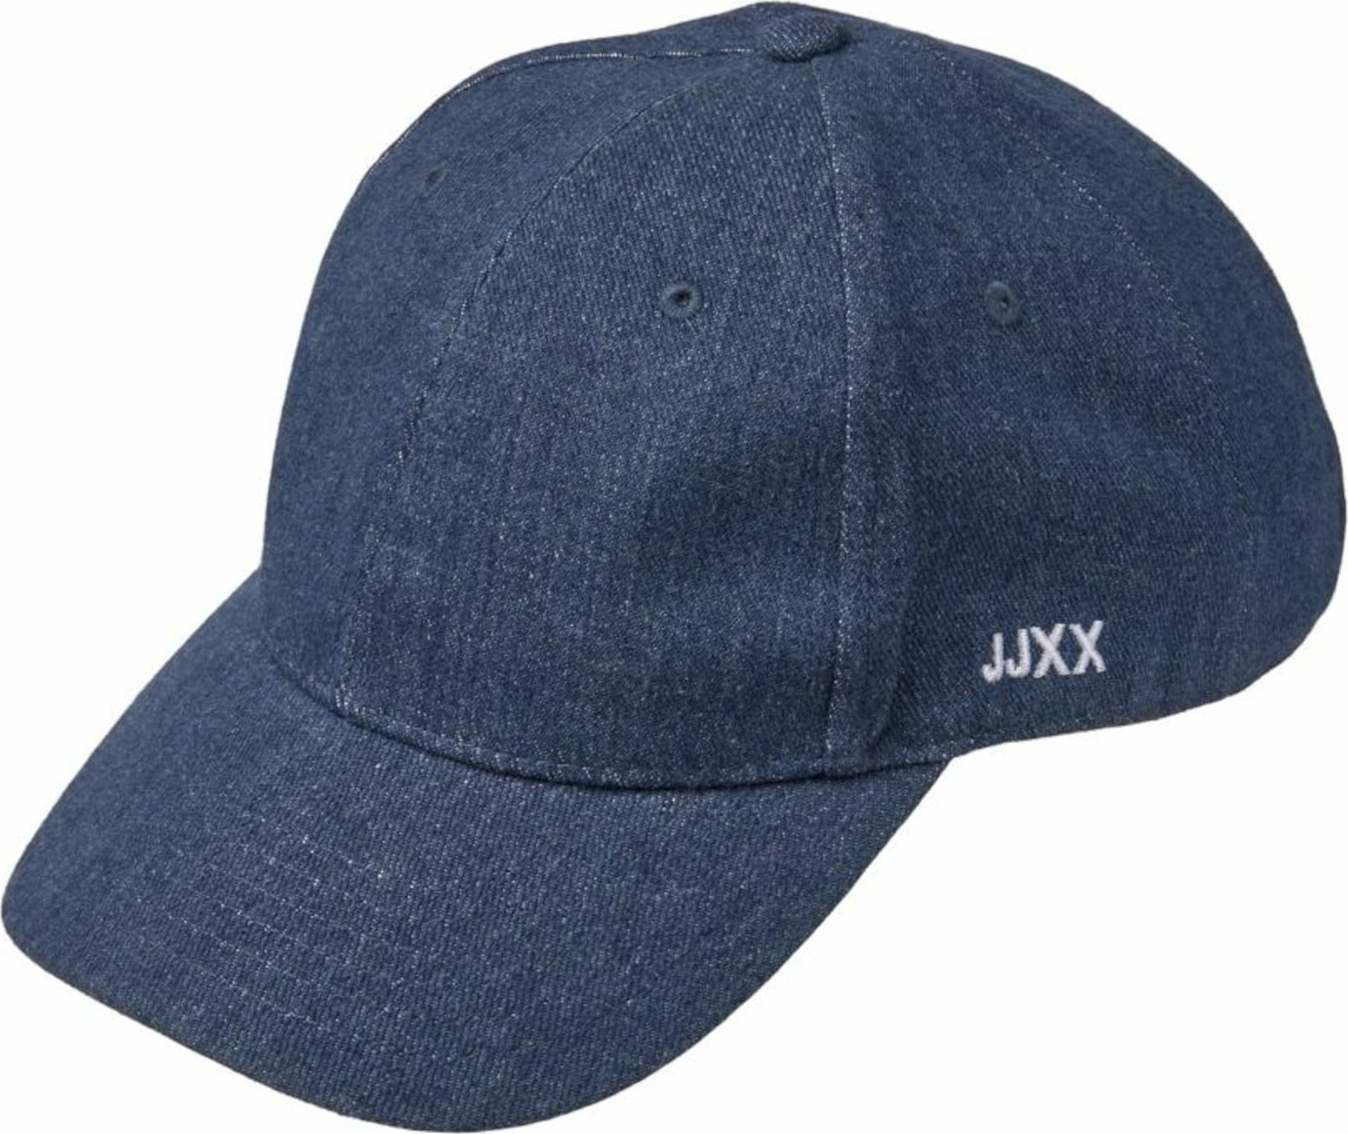 JJXX Čepice modrá / tmavě modrá